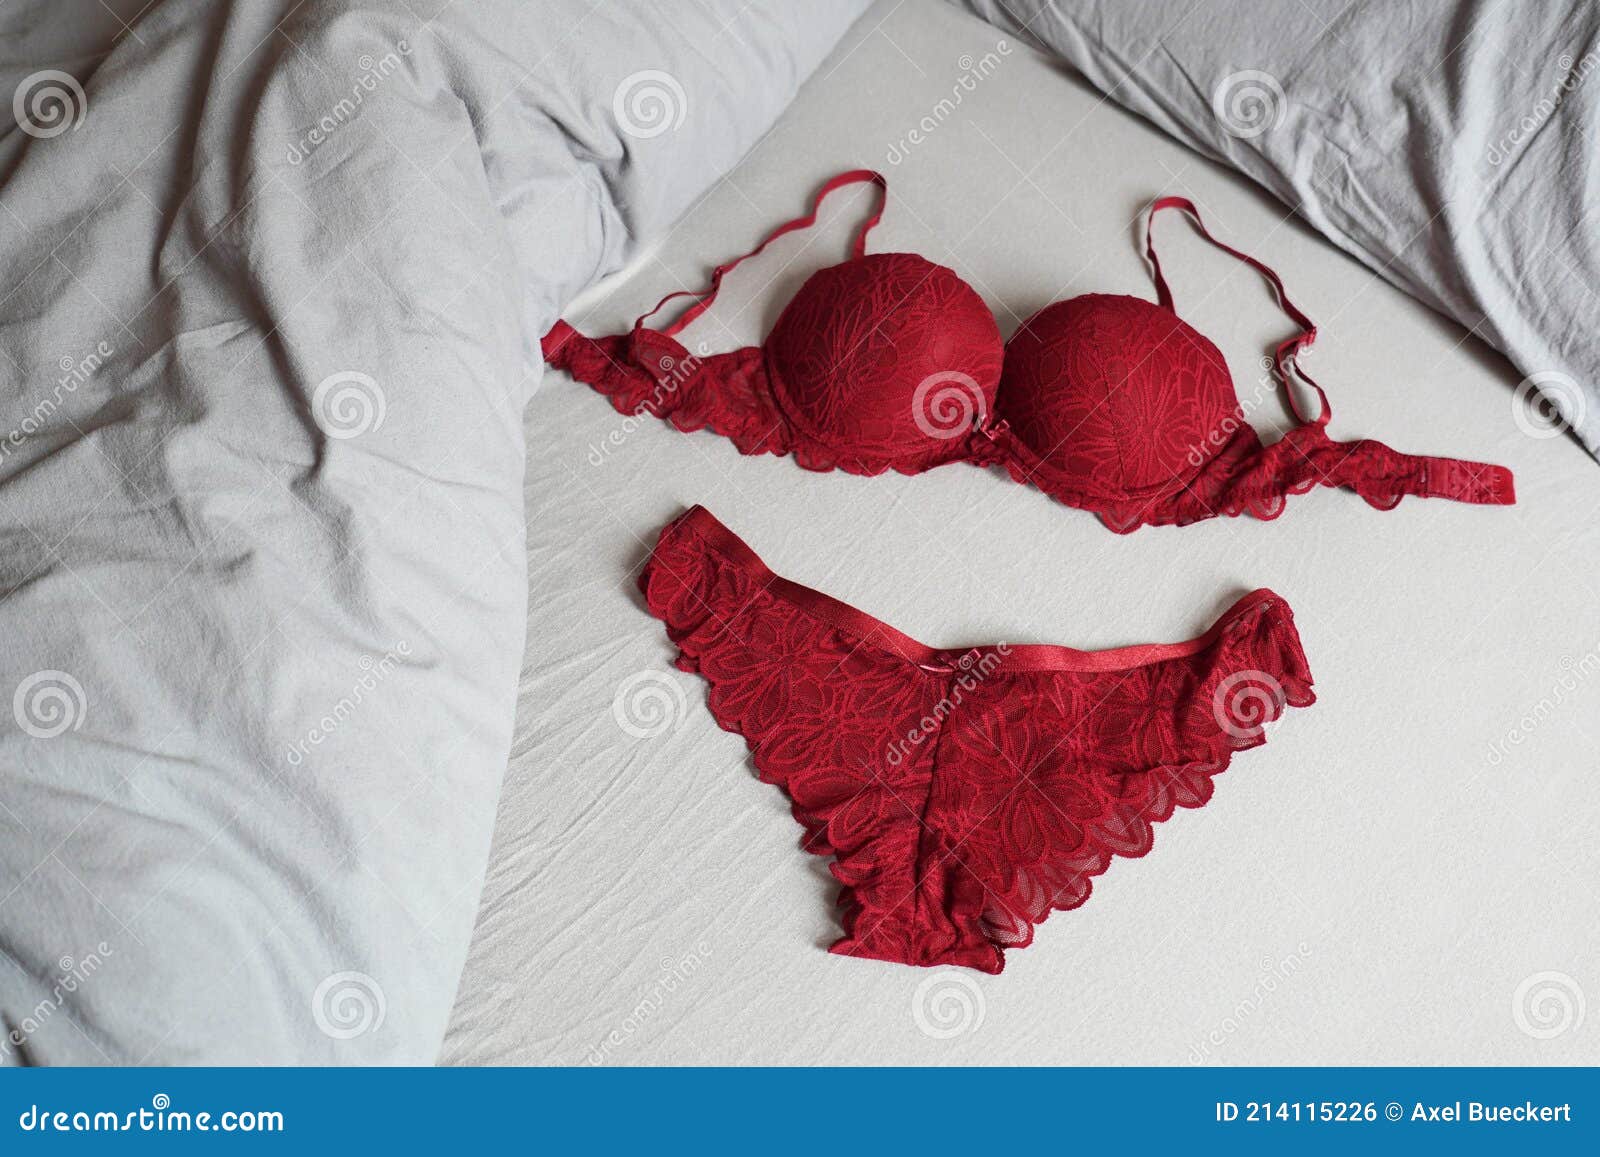 https://thumbs.dreamstime.com/z/red-bar-panty-lingerie-set-bed-panties-214115226.jpg